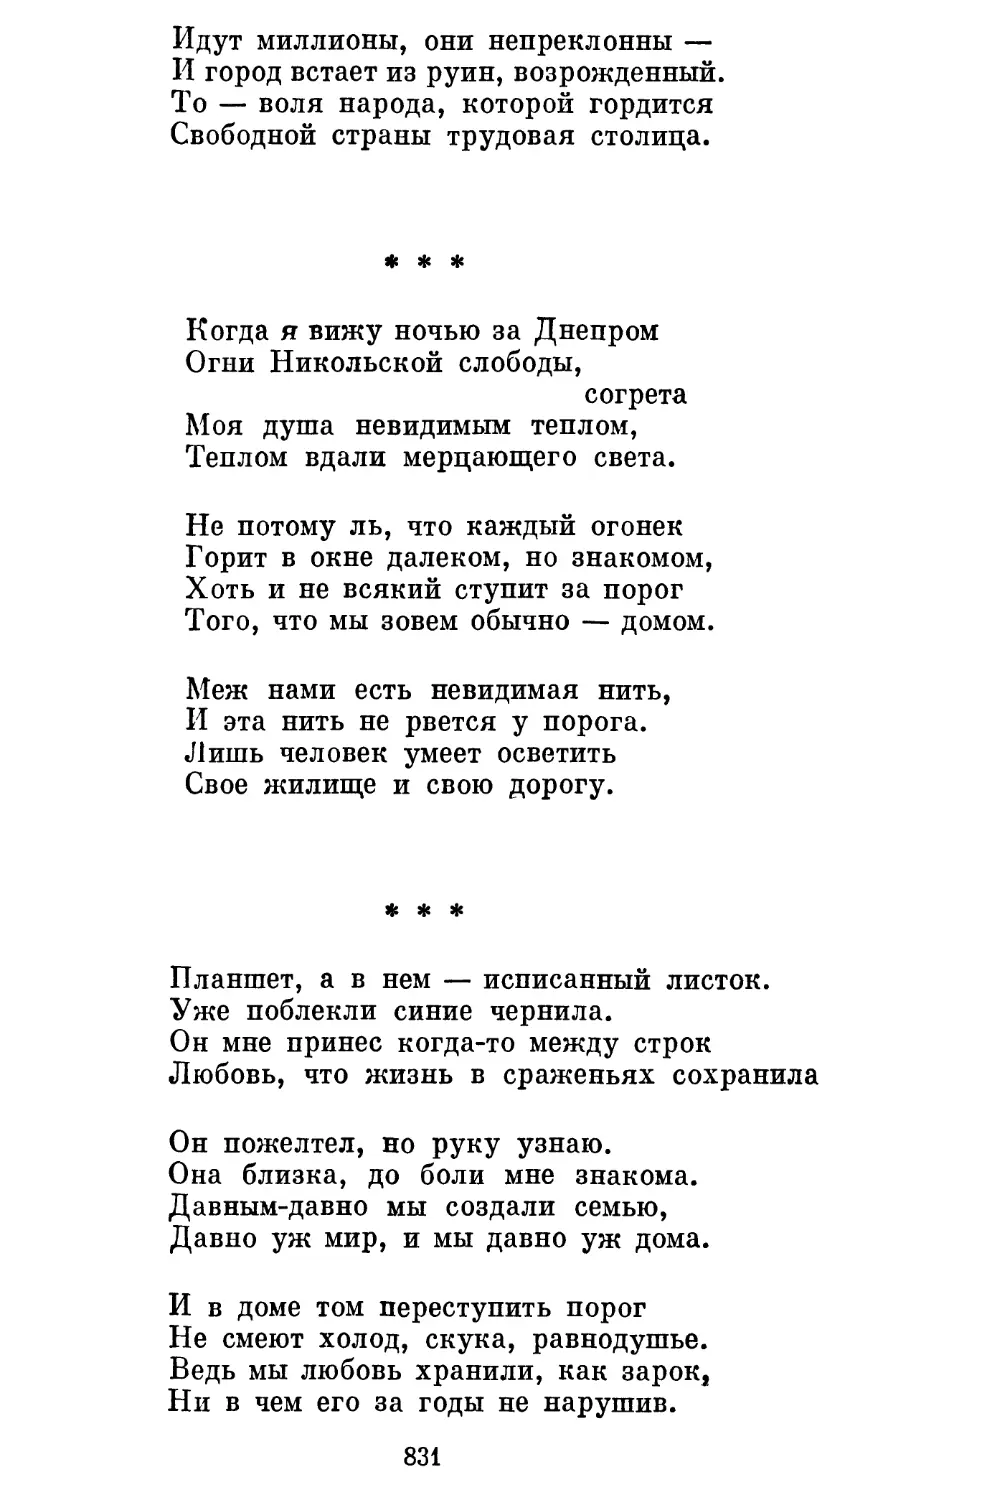 «Когда я вижу ночью за Днепром...» Перевод Д. Седых . . .
«Планшет, а в нем — исписанный листок...» Перевод Д. Седых